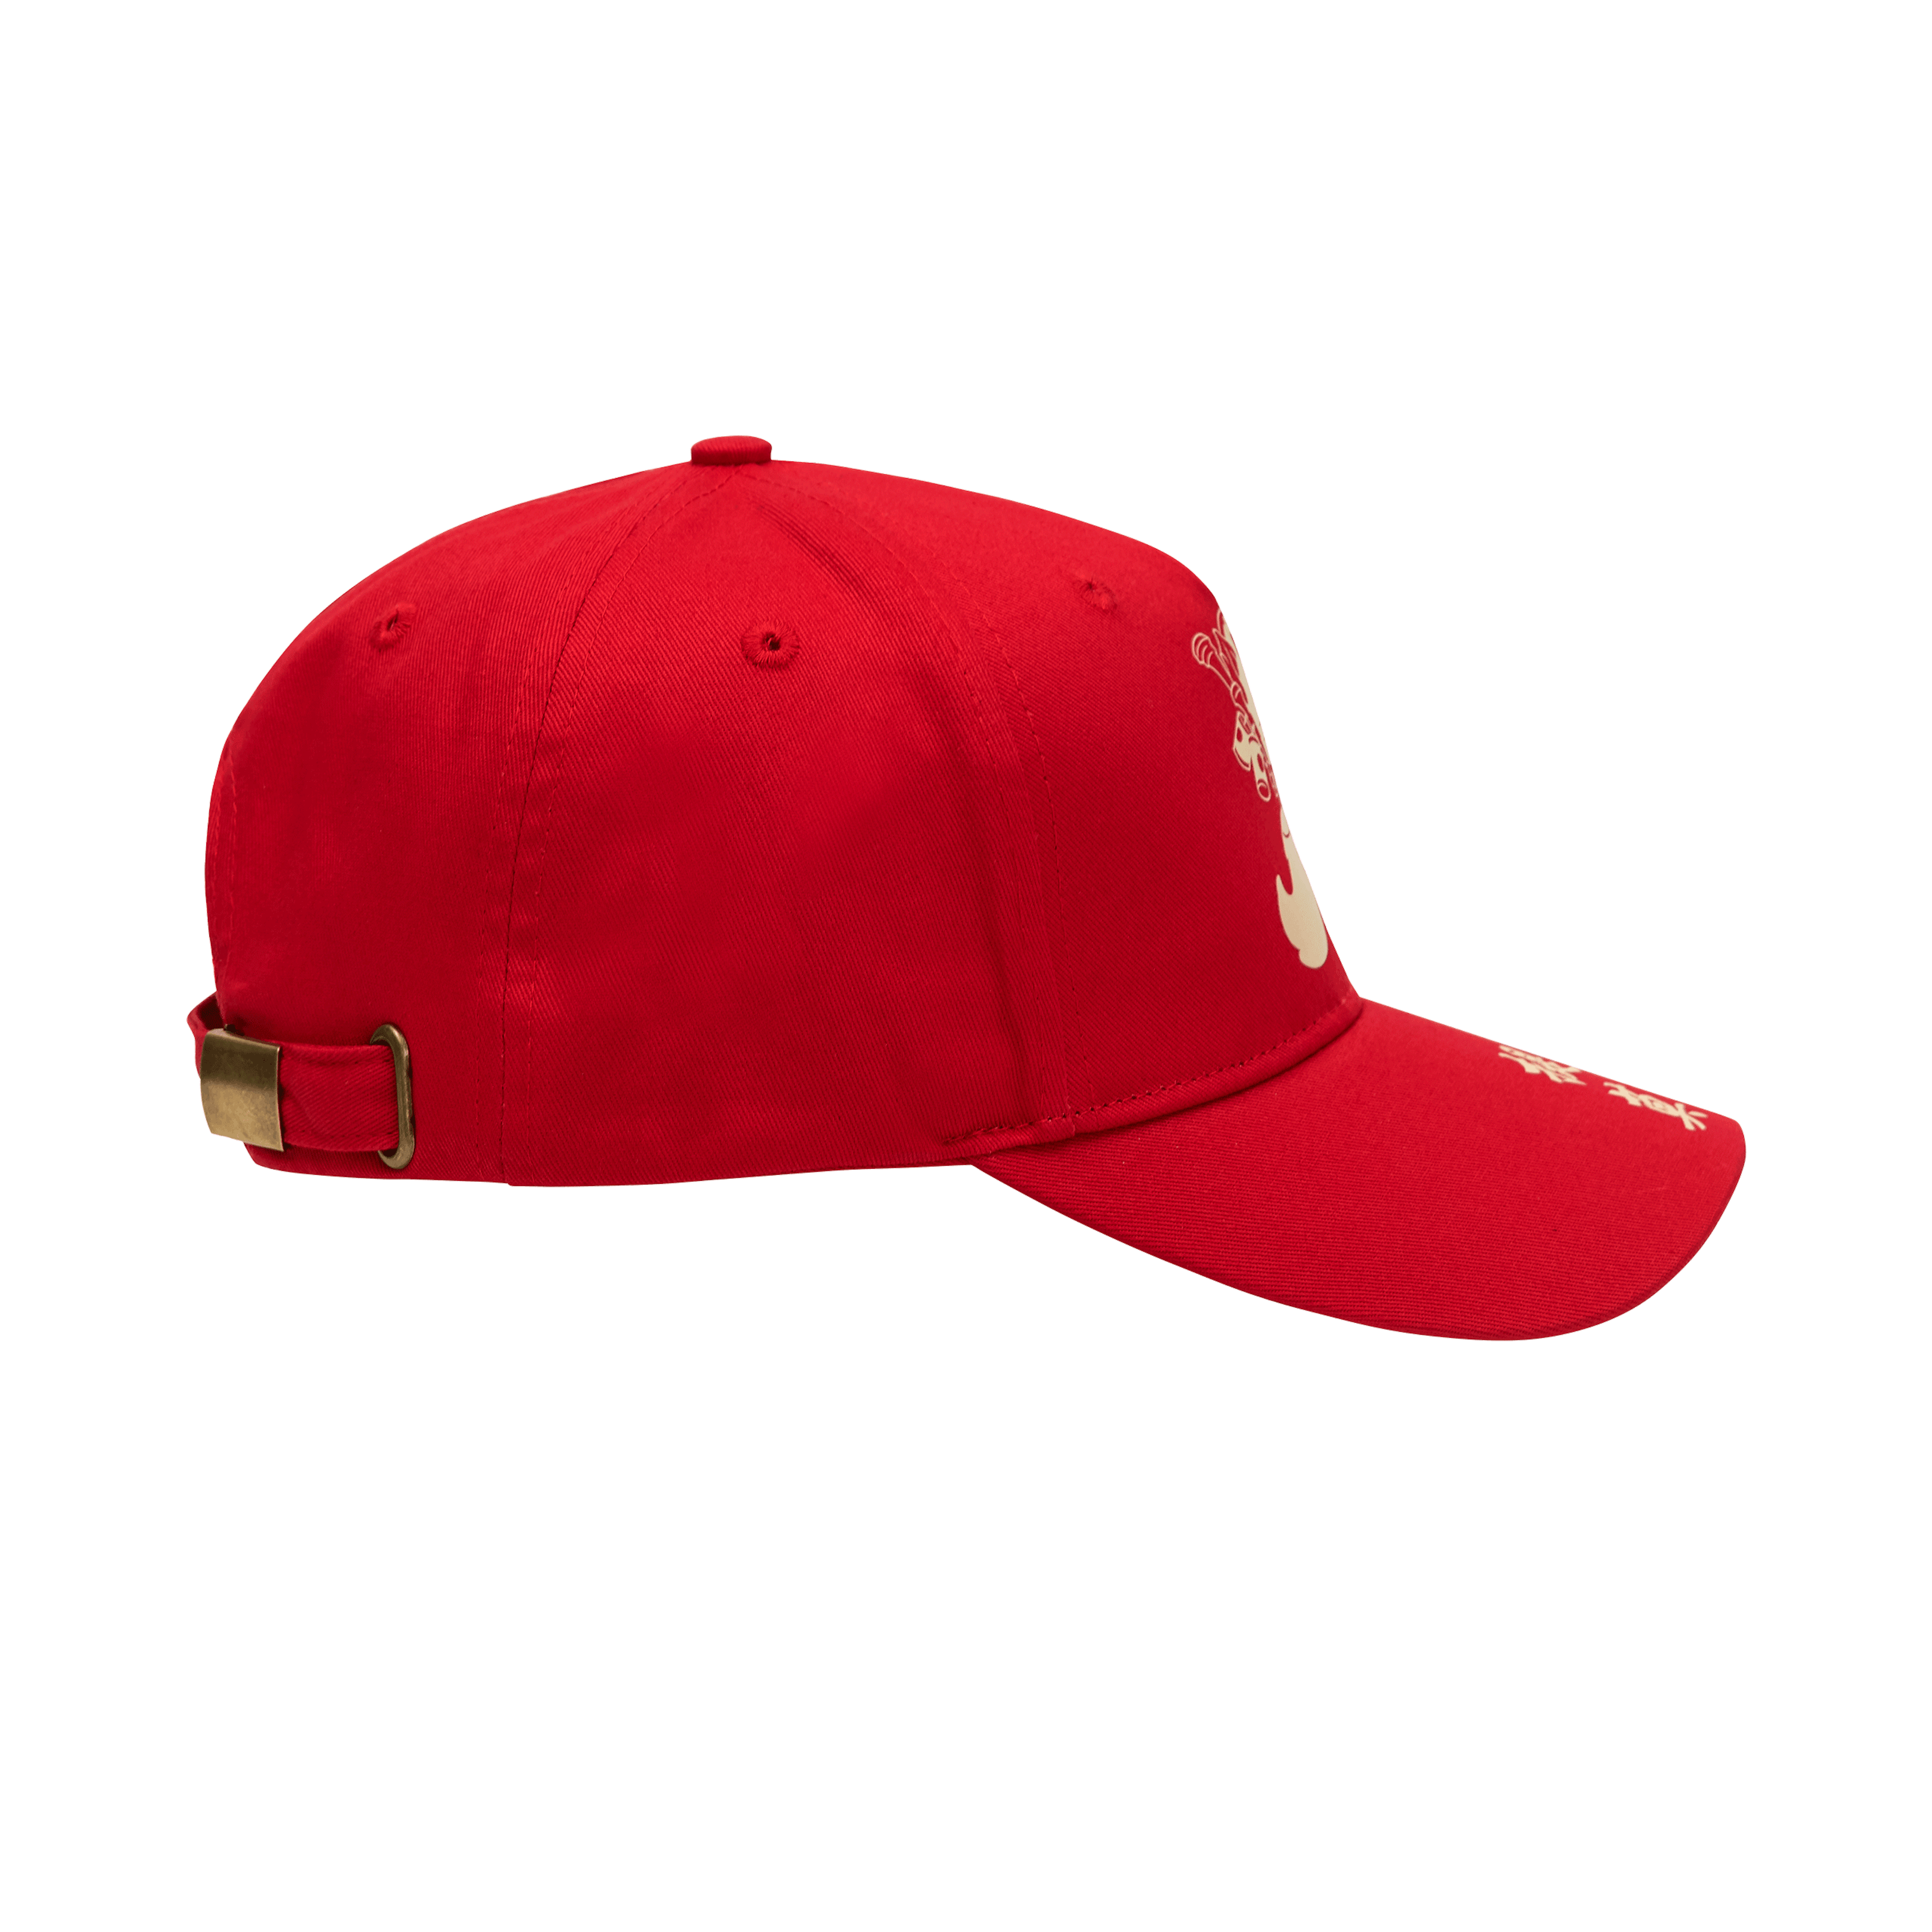 Firecracker Teemo Hat